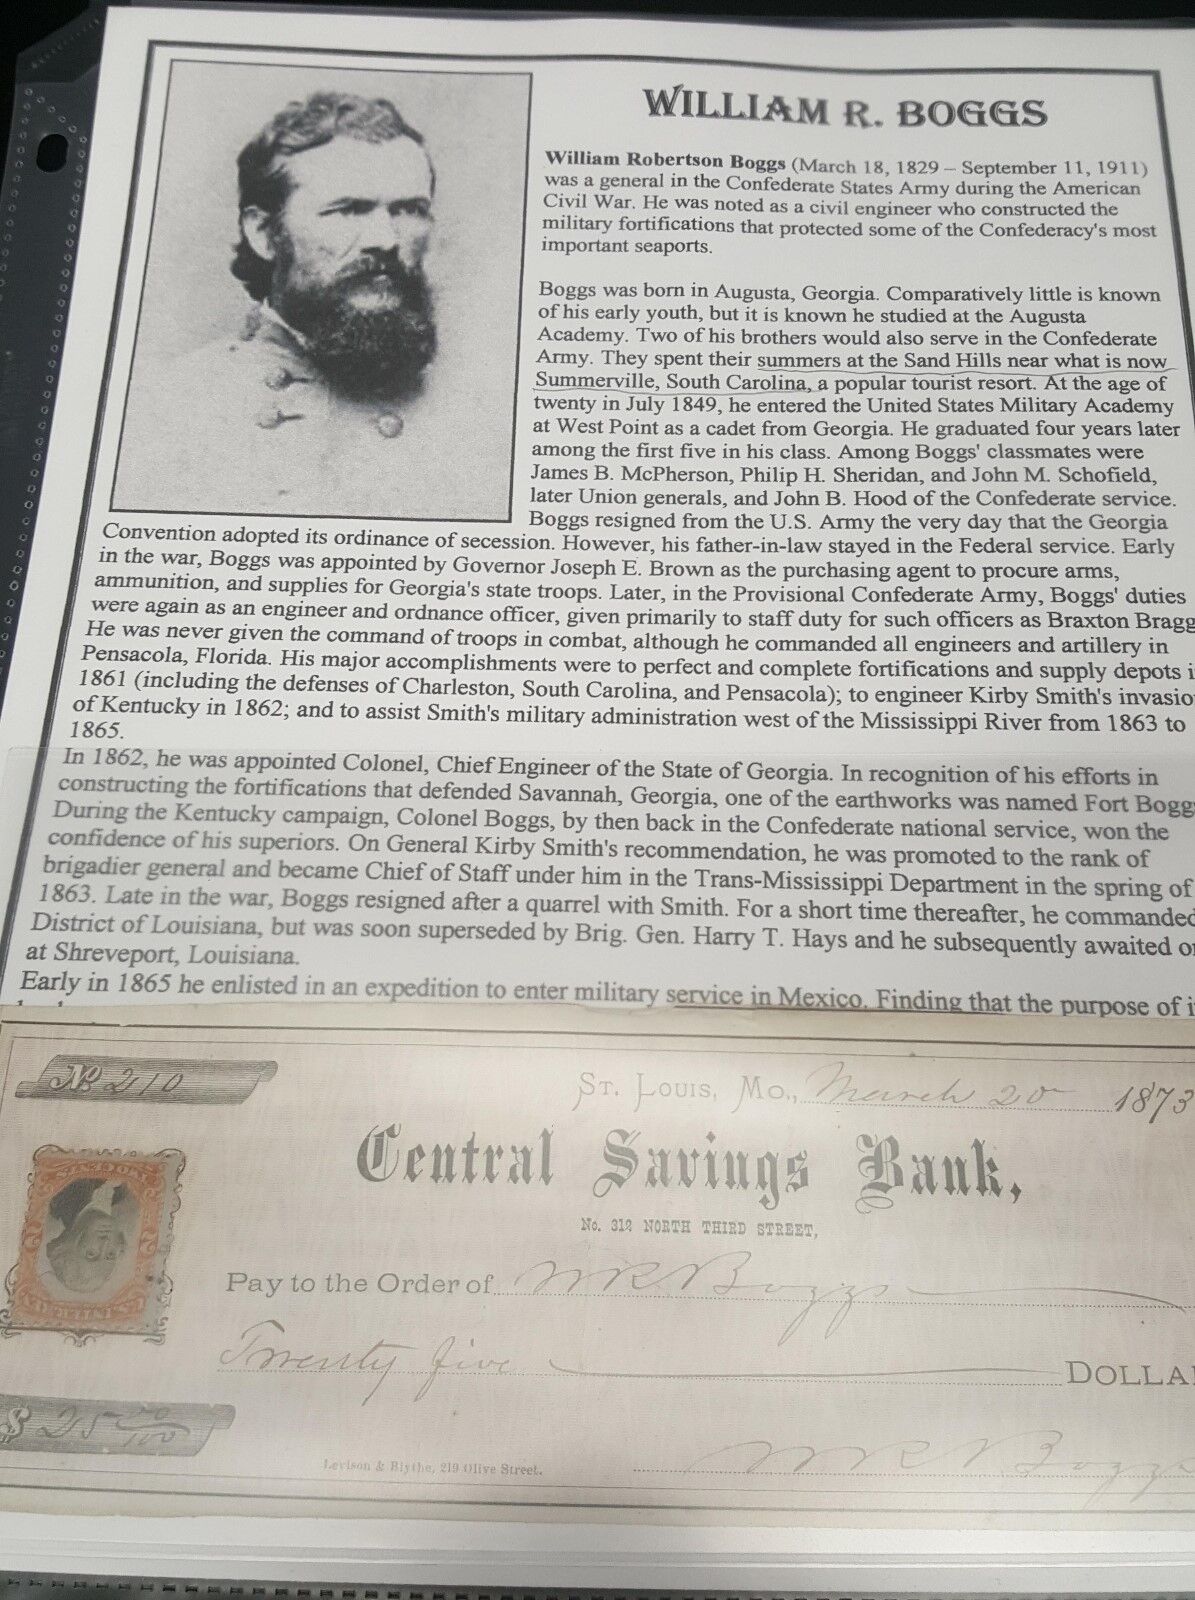 1873 William R. Boggs endorsed Check